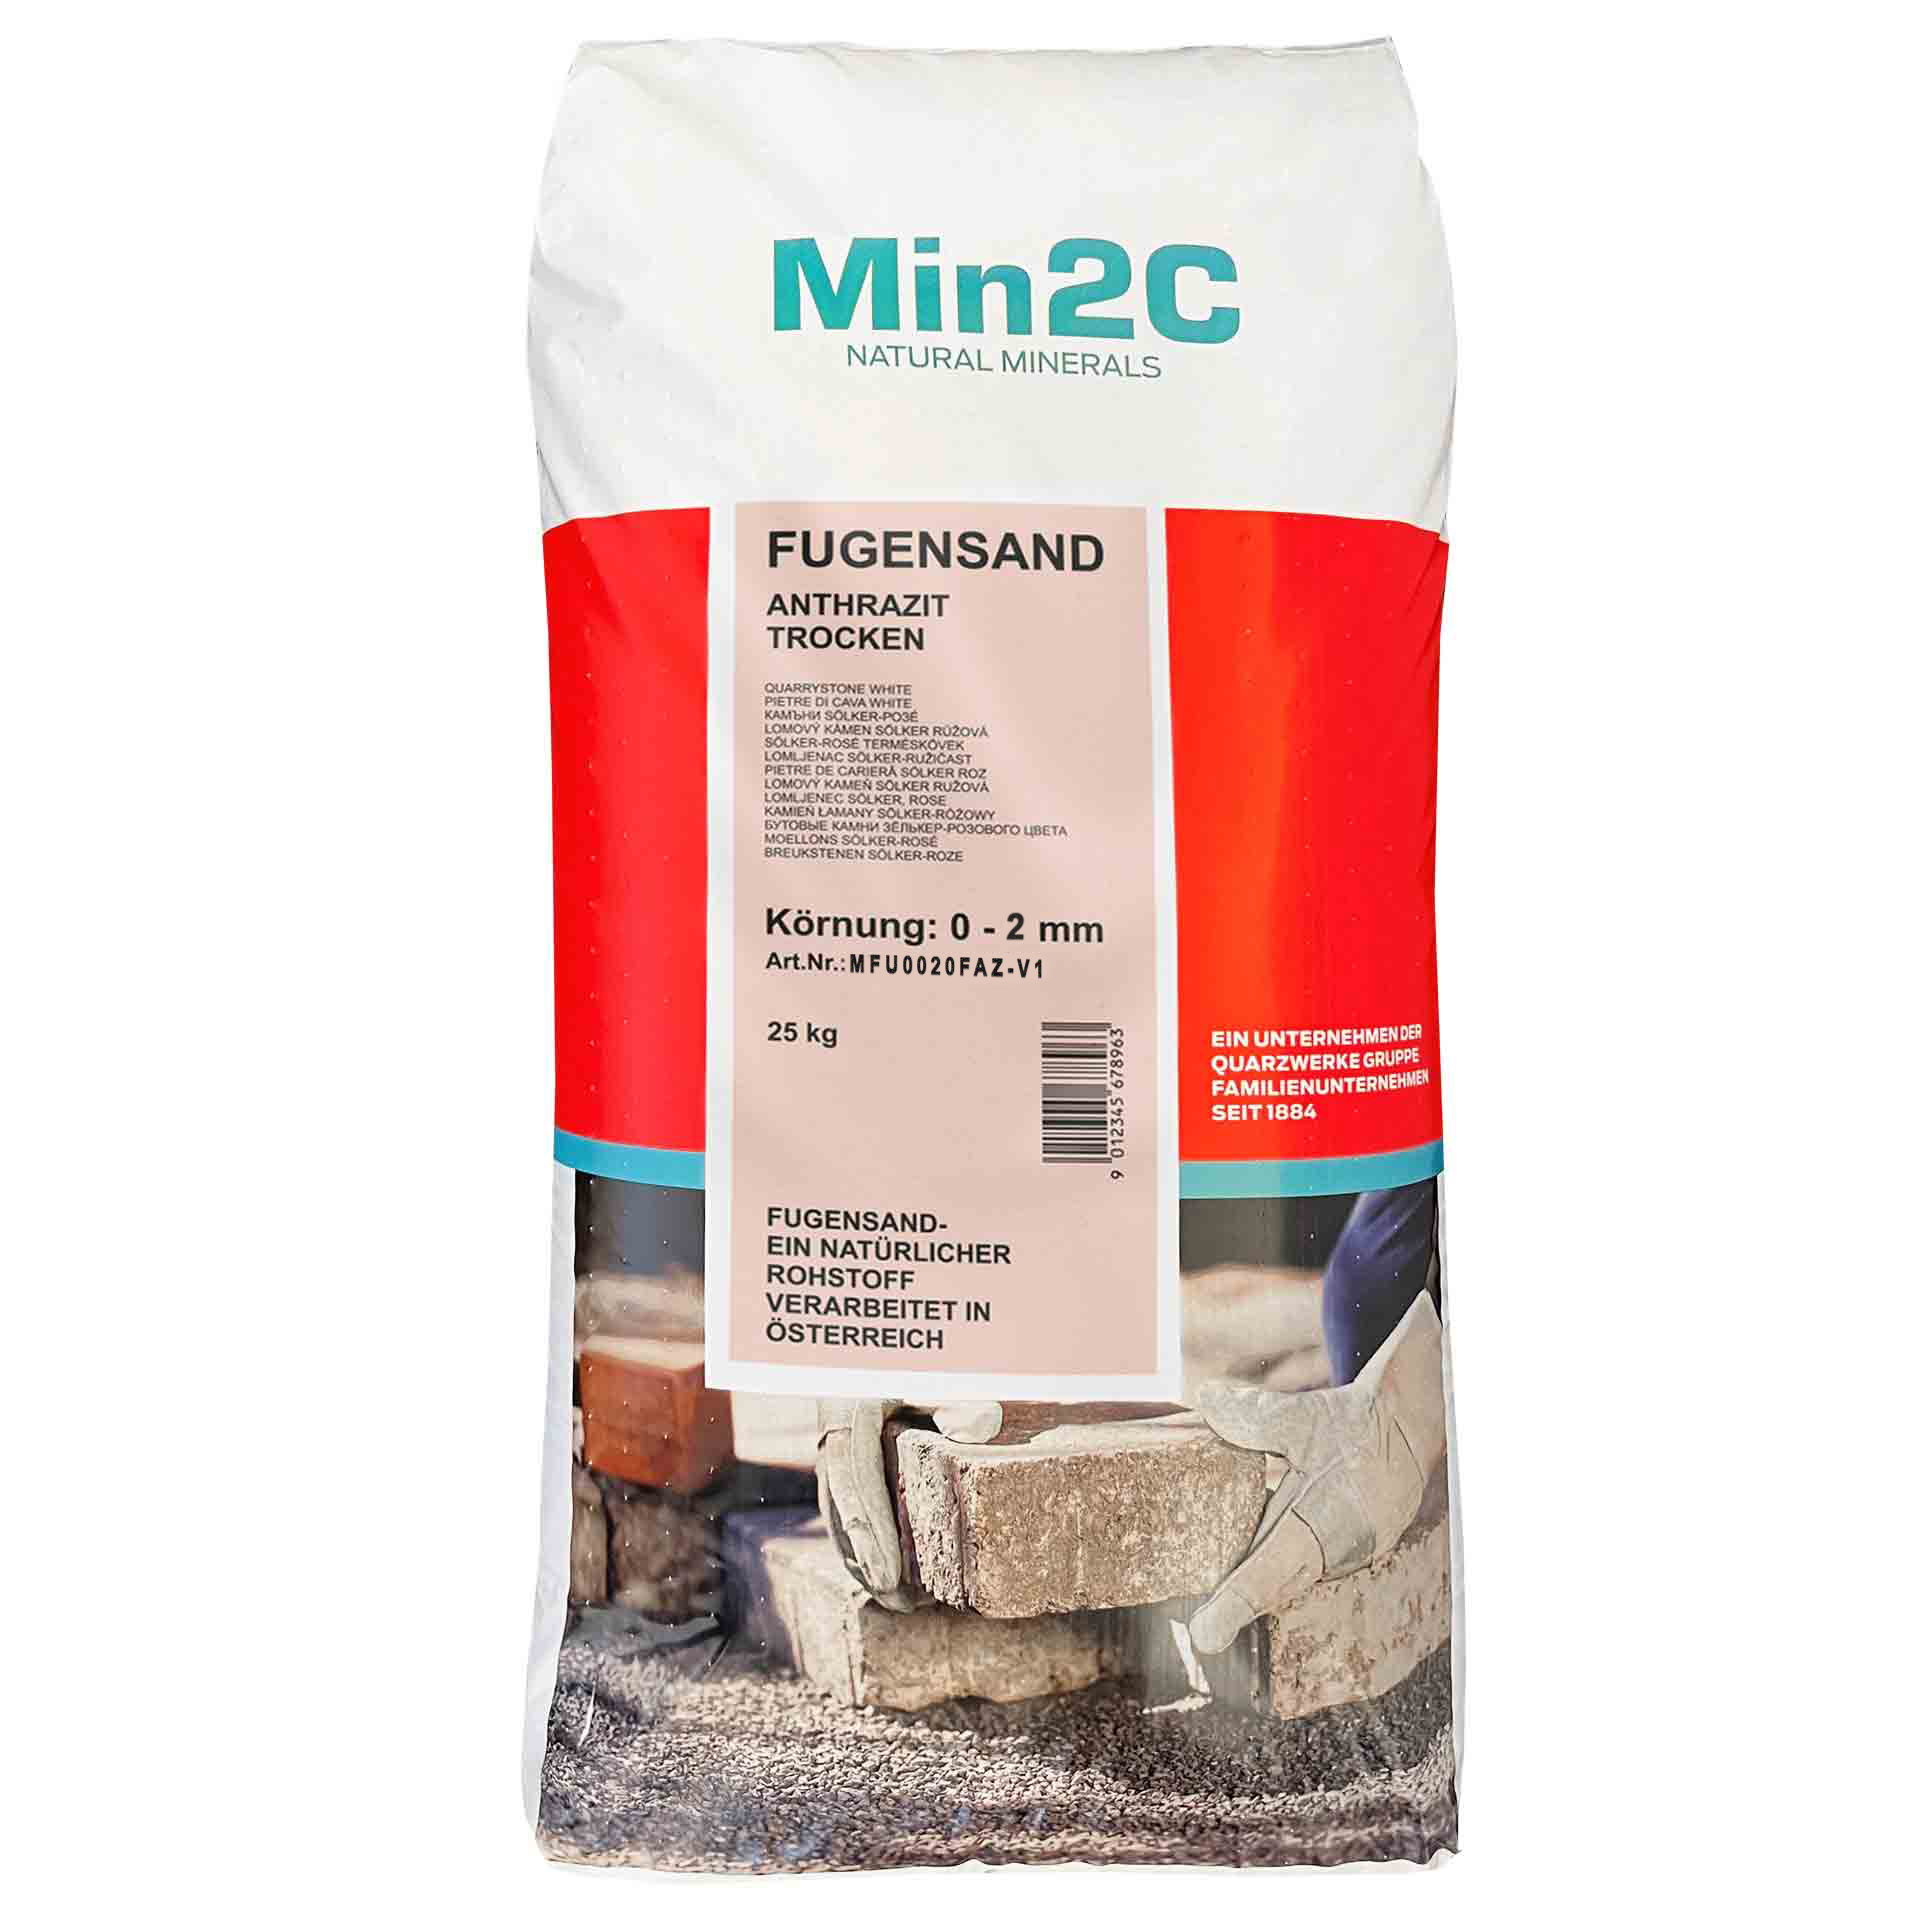 Min2C 25 kg Fugensand anthrazit 0.0-2.0 mm Premium Quarzsand